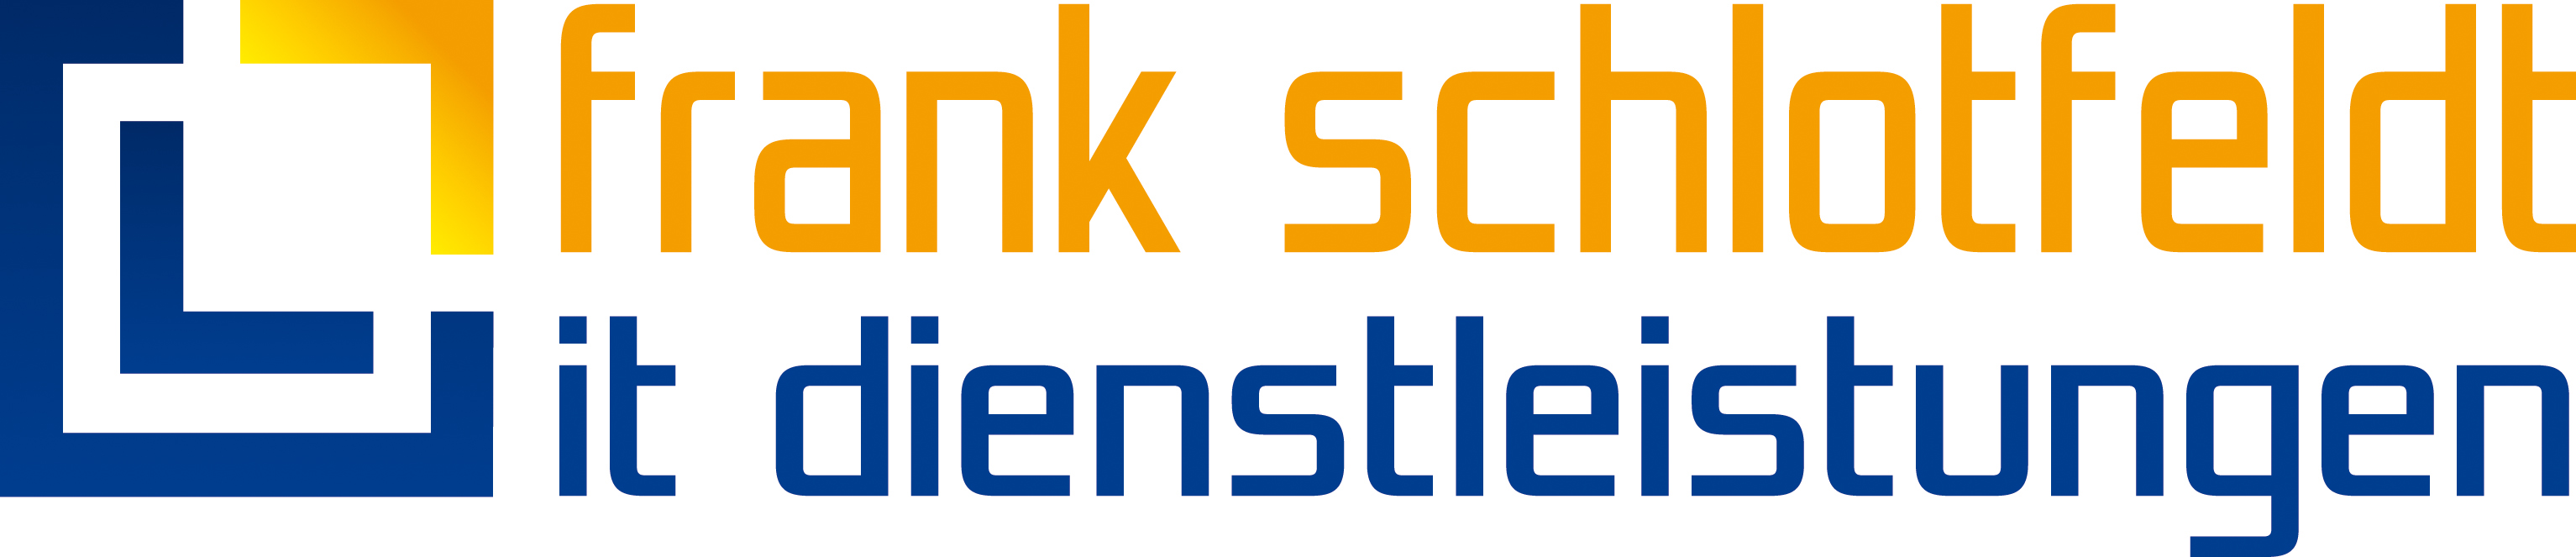 Frank Schlotfeldt it dienstleistungen GmbH